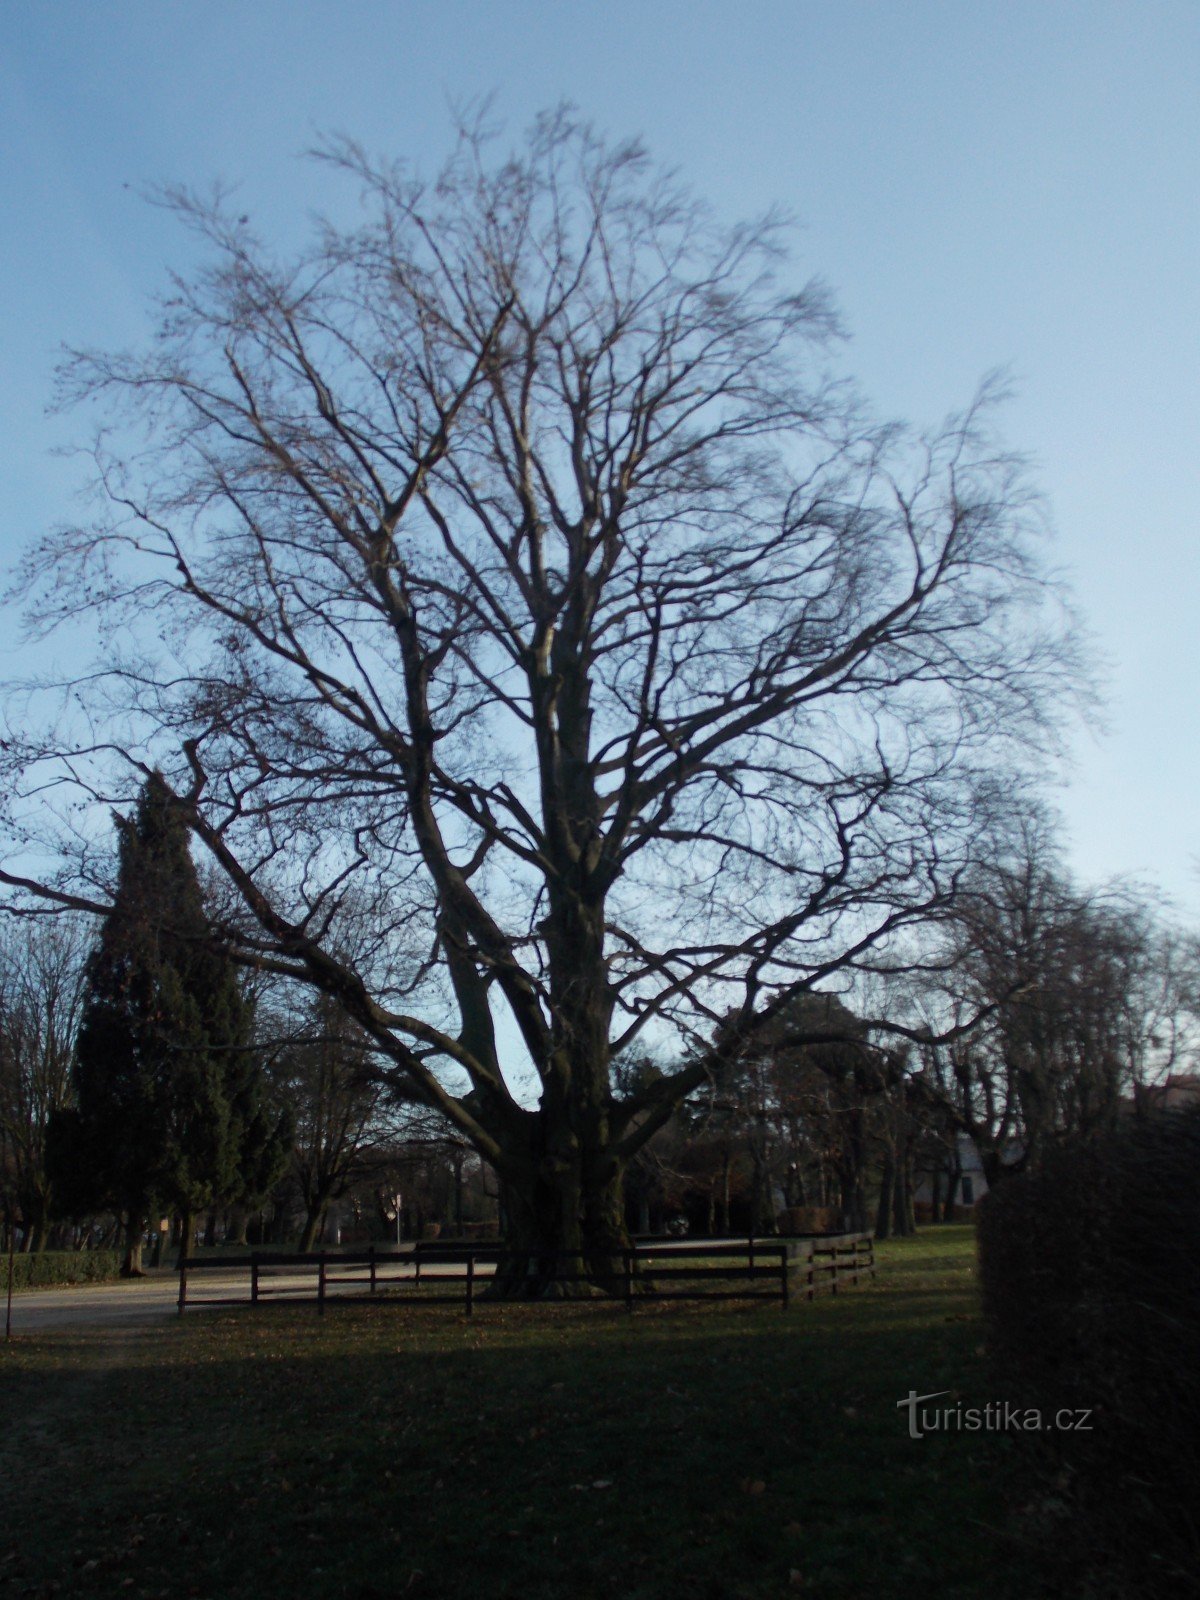 Αναμνηστικό δέντρο μπροστά από το κάστρο στο Holešov